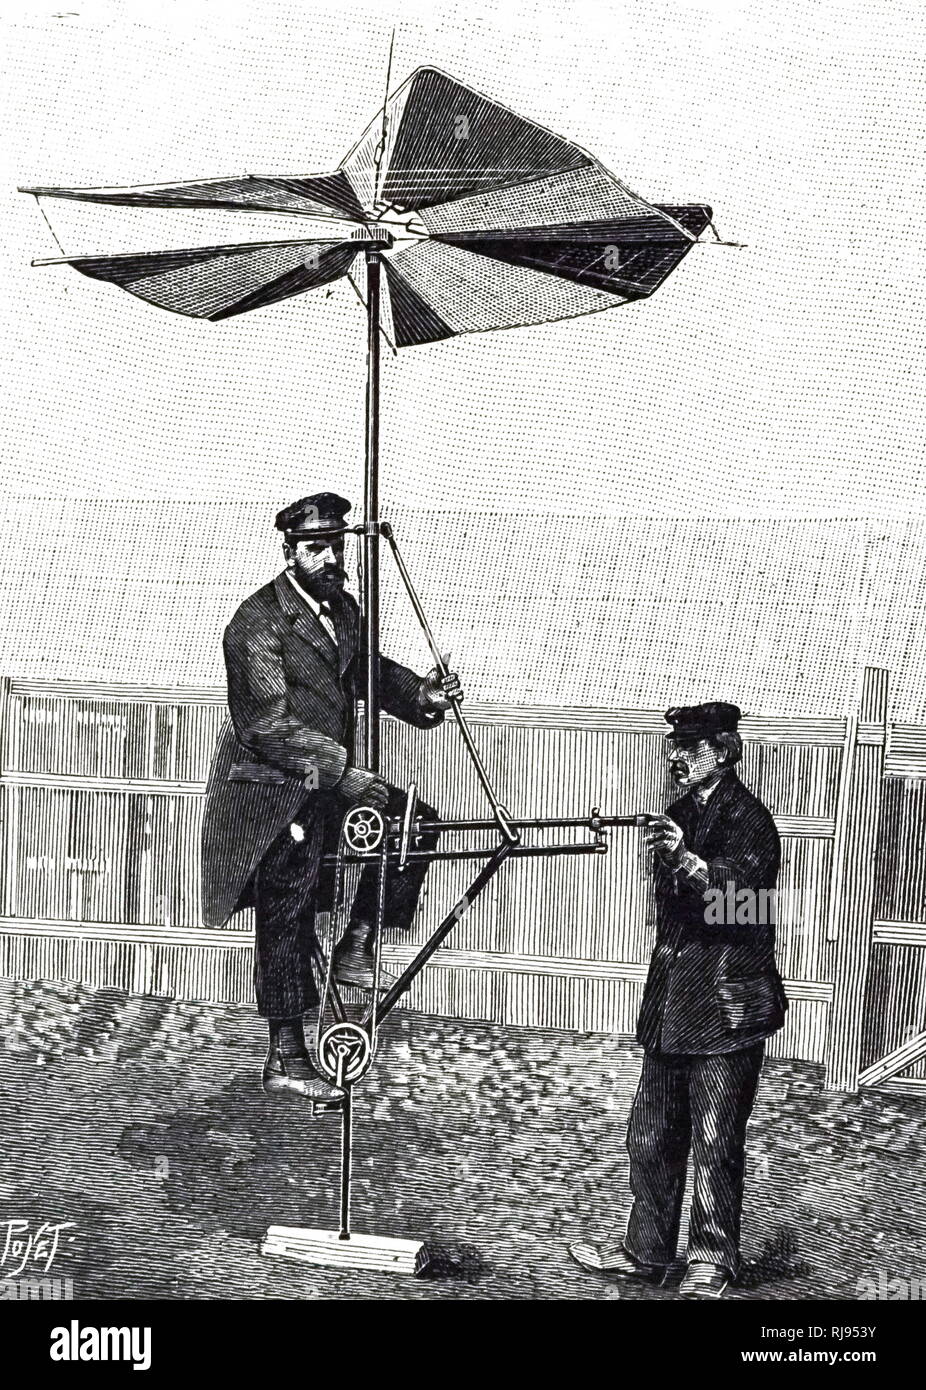 Ein kupferstich mit der Darstellung eines Pedals angetriebene Hubschrauber,  von Robert H. Goddard konzipiert. Robert H. Goddard (1882-1945), ein  amerikanischer Ingenieur, Professor, Physiker und Erfinder. Vom 20.  Jahrhundert Stockfotografie - Alamy